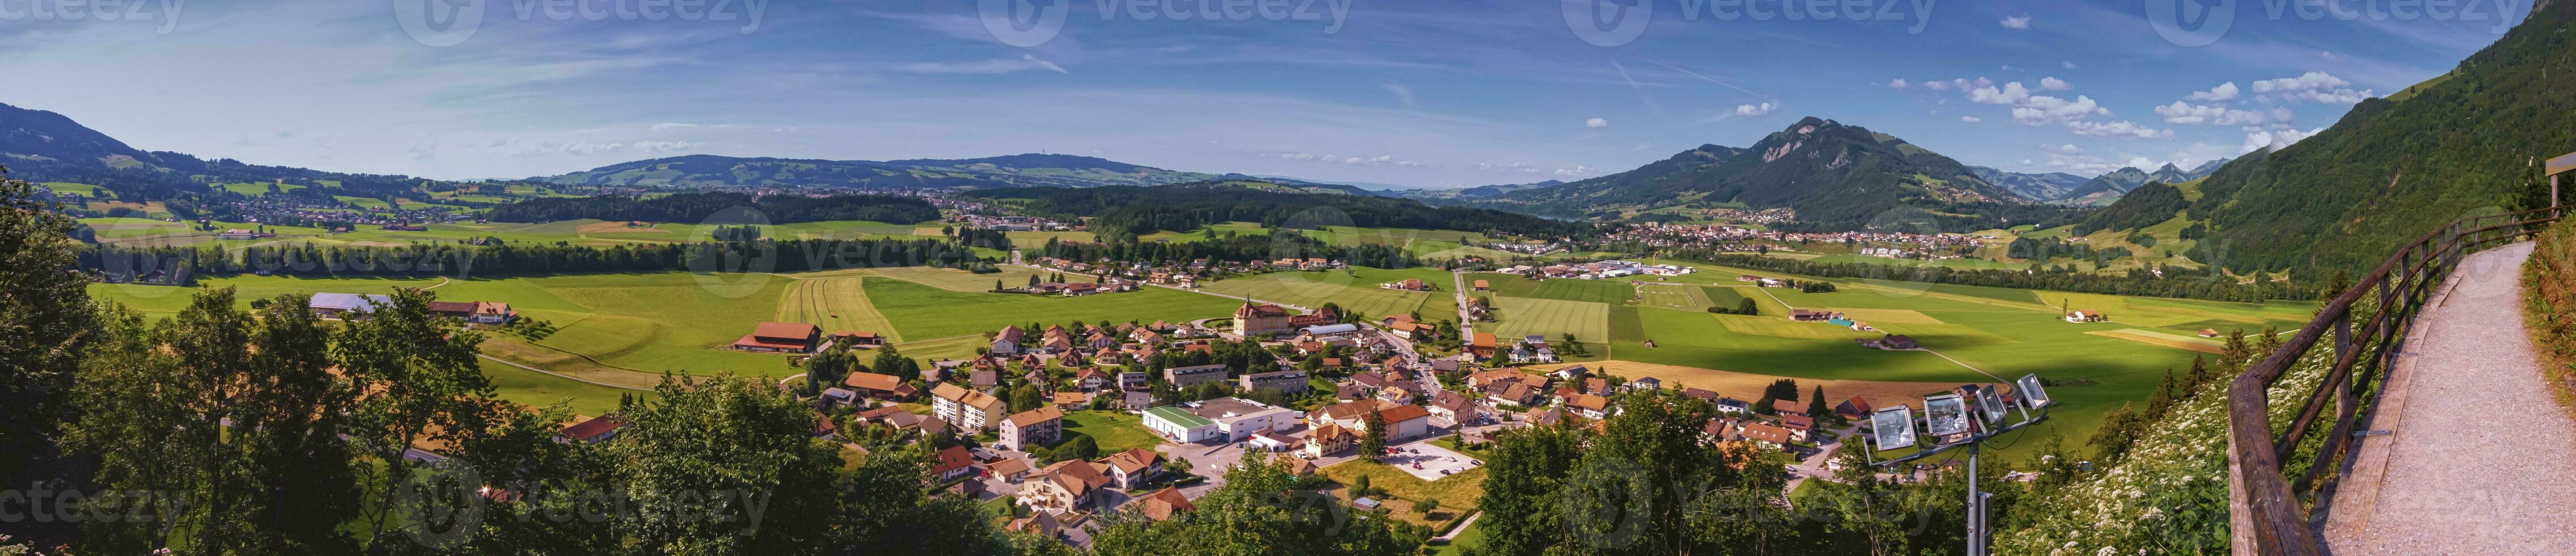 panoramico Visualizza di gruviera la zona, Friburgo, Svizzera foto